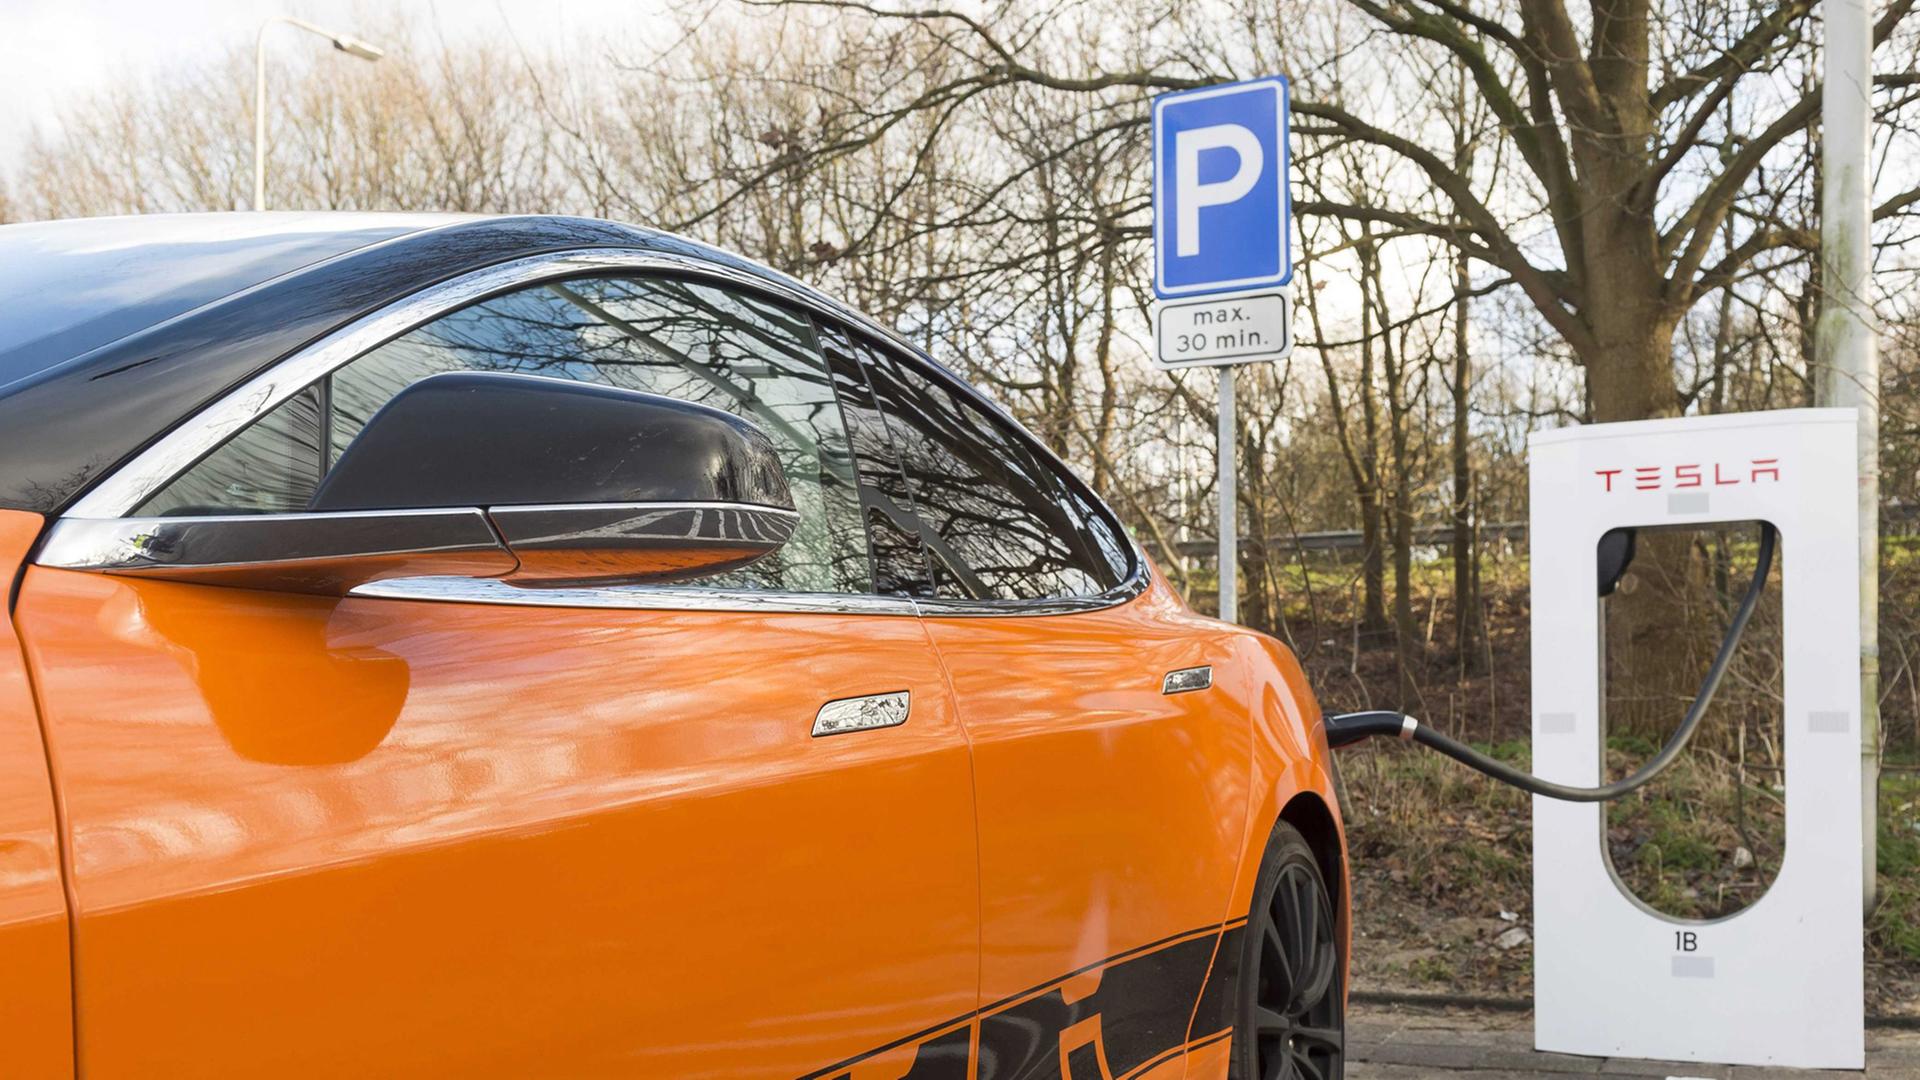 Ein orangefarbenes Elektro-Auto mit der Aufschrift "Tesla" ist an eine Ladestation angeschlossen.